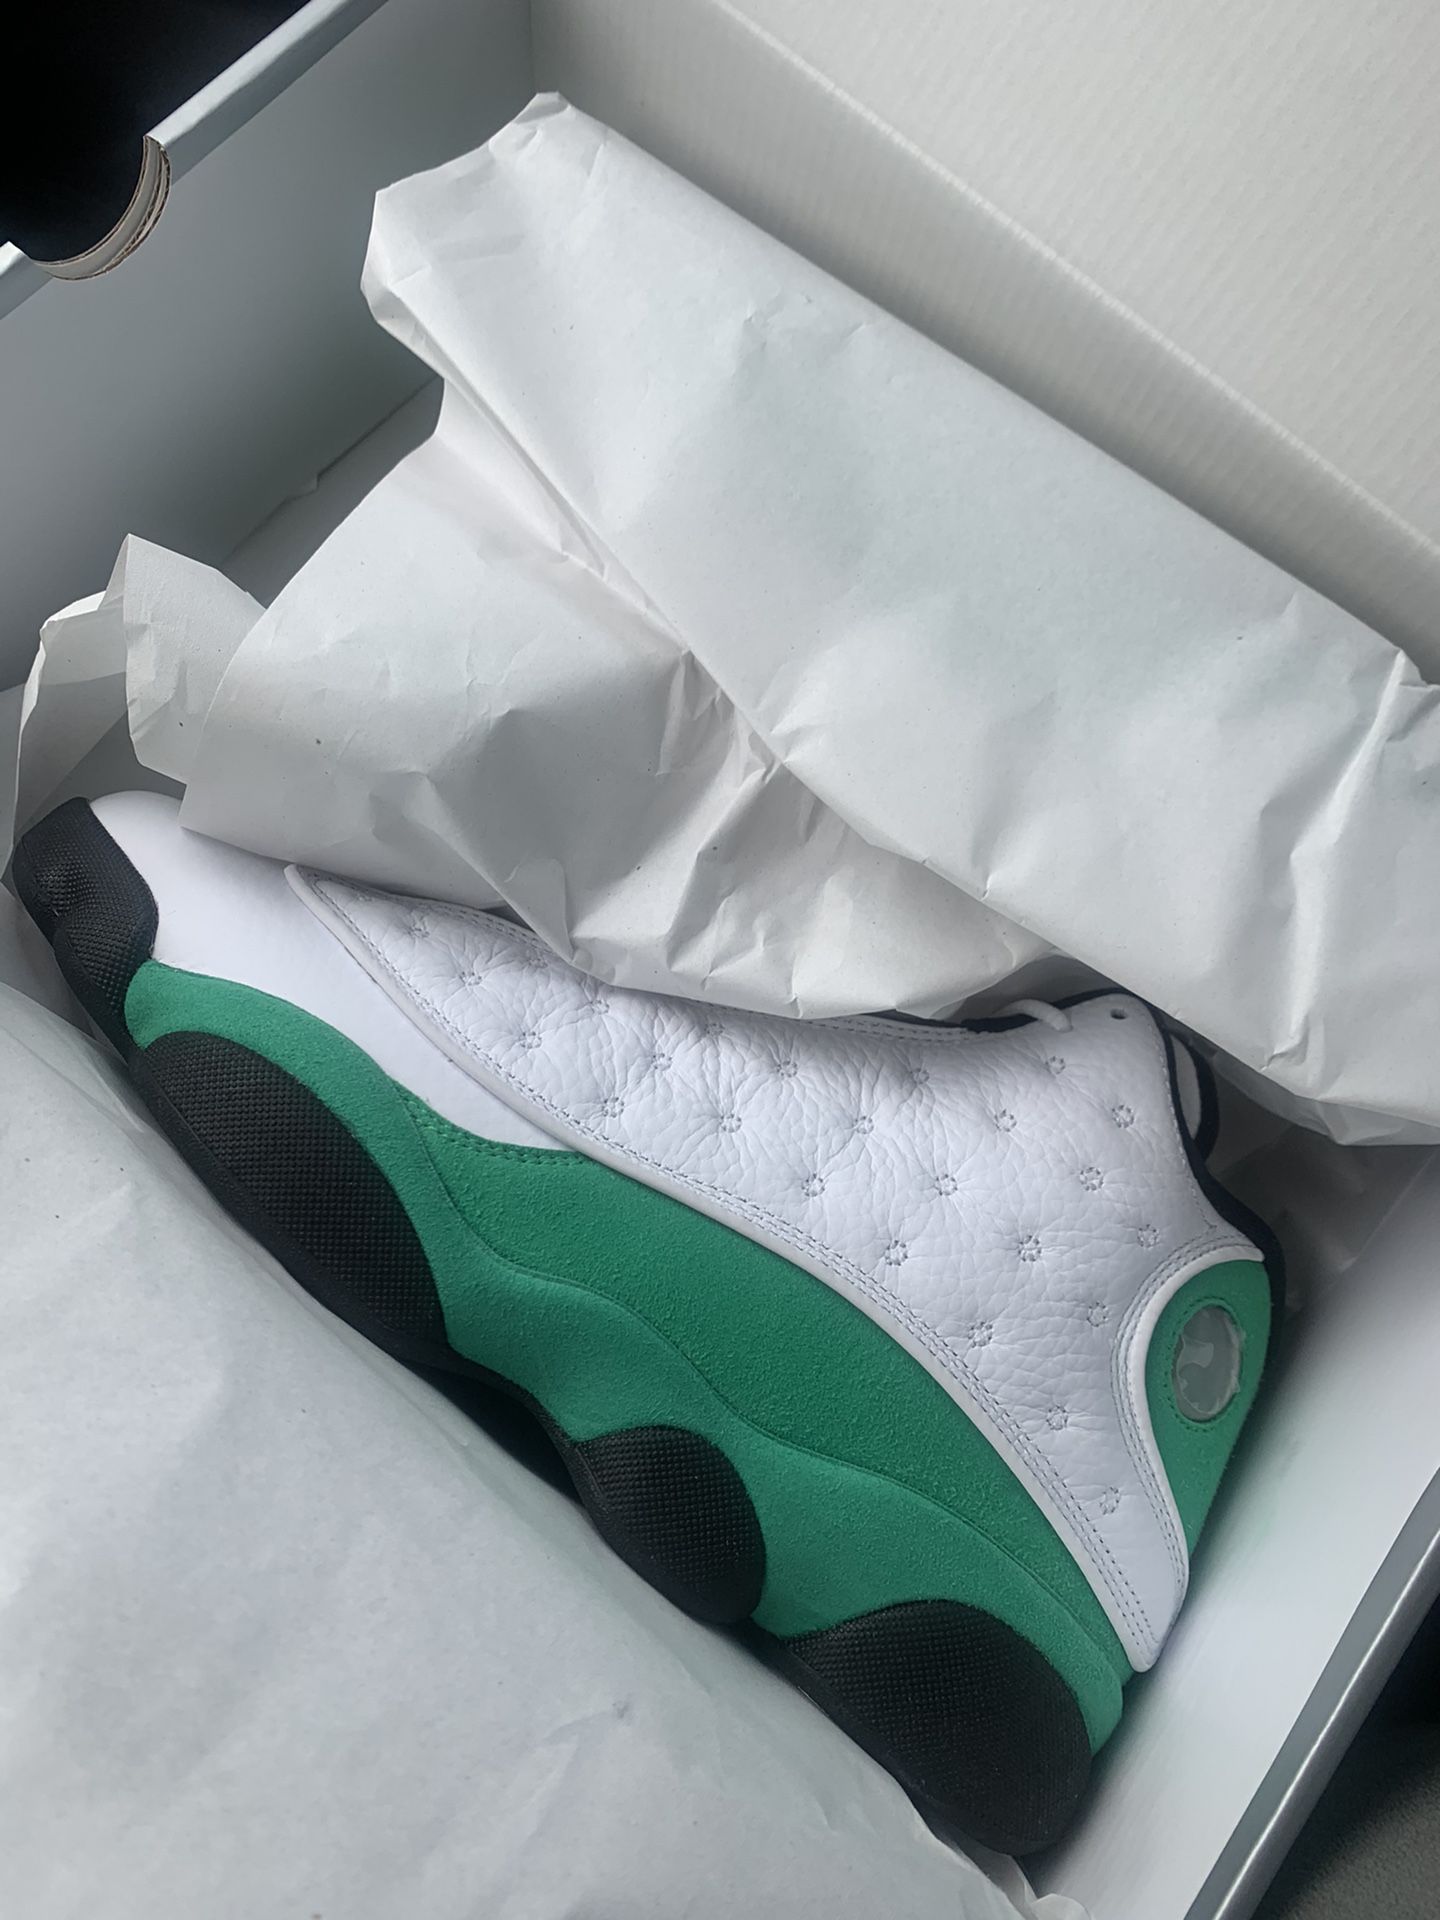 BRAND NEW!!!!! Lucky Green Jordans 13 size 9.5